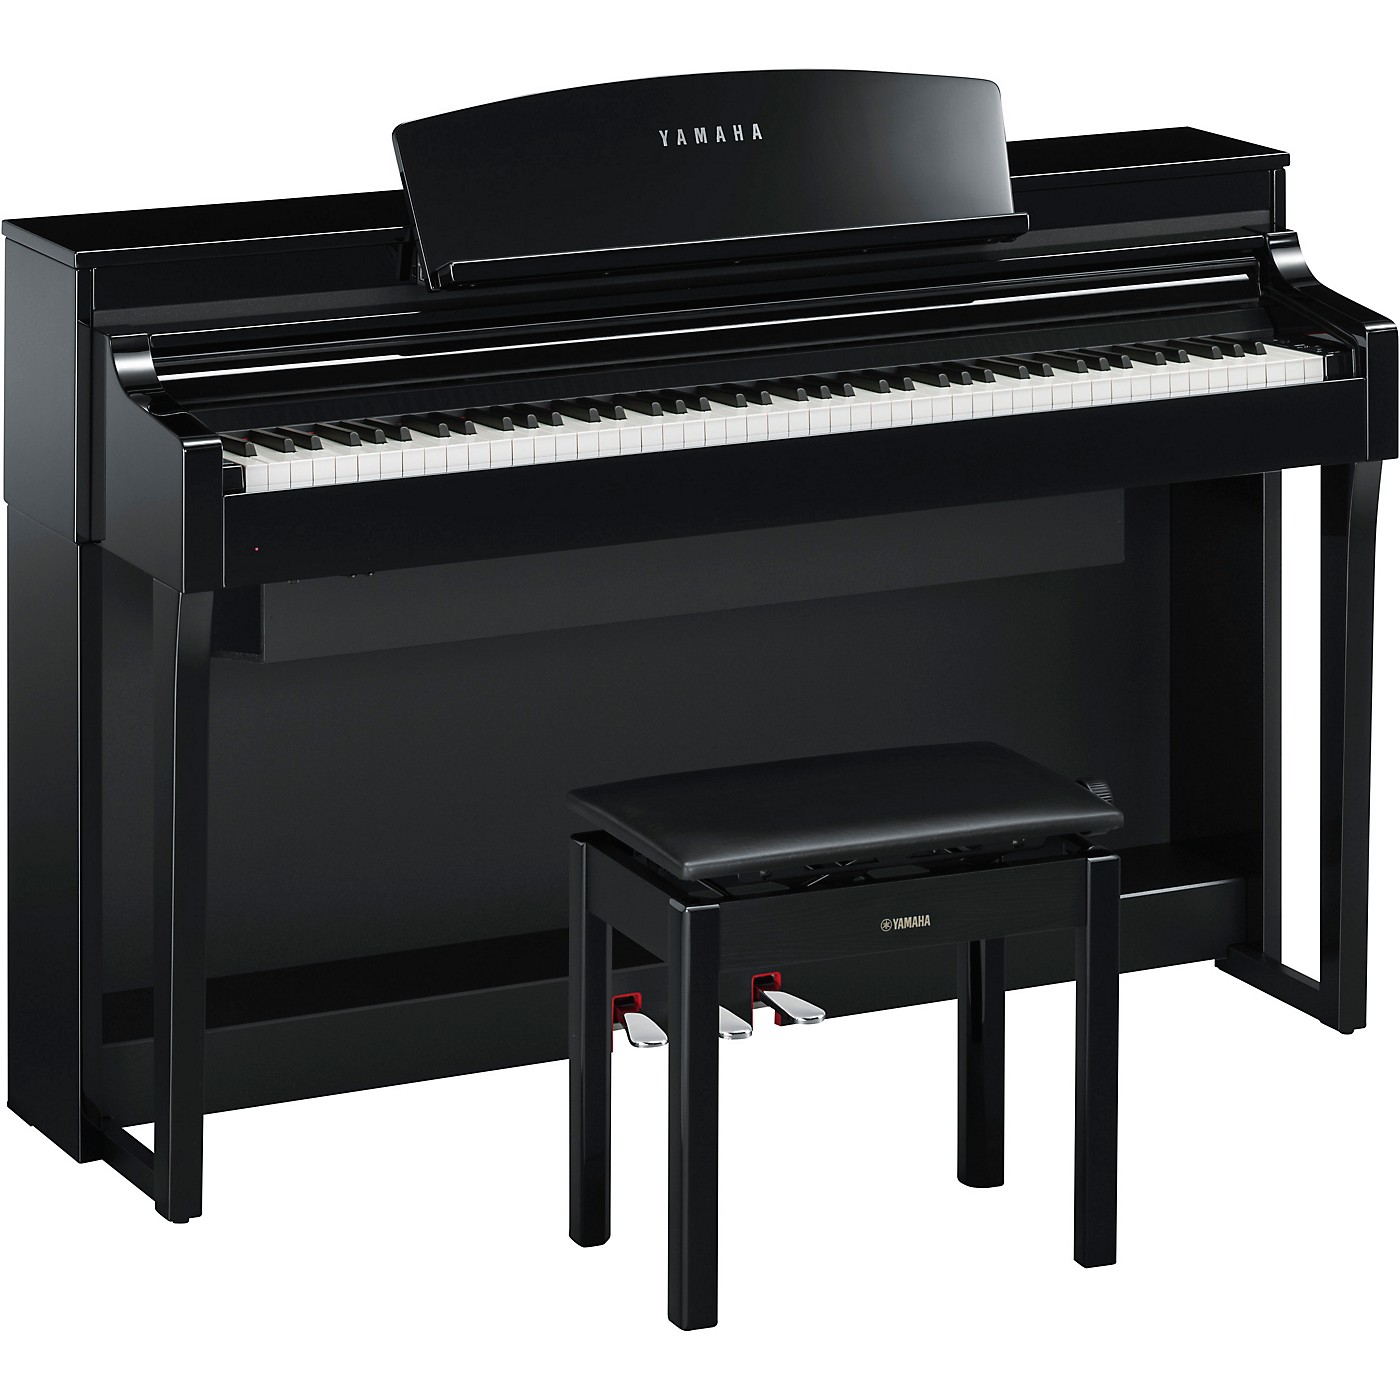 Yamaha Clavinova CSP-170 Home Digital Piano Polished Ebony With Bench thumbnail